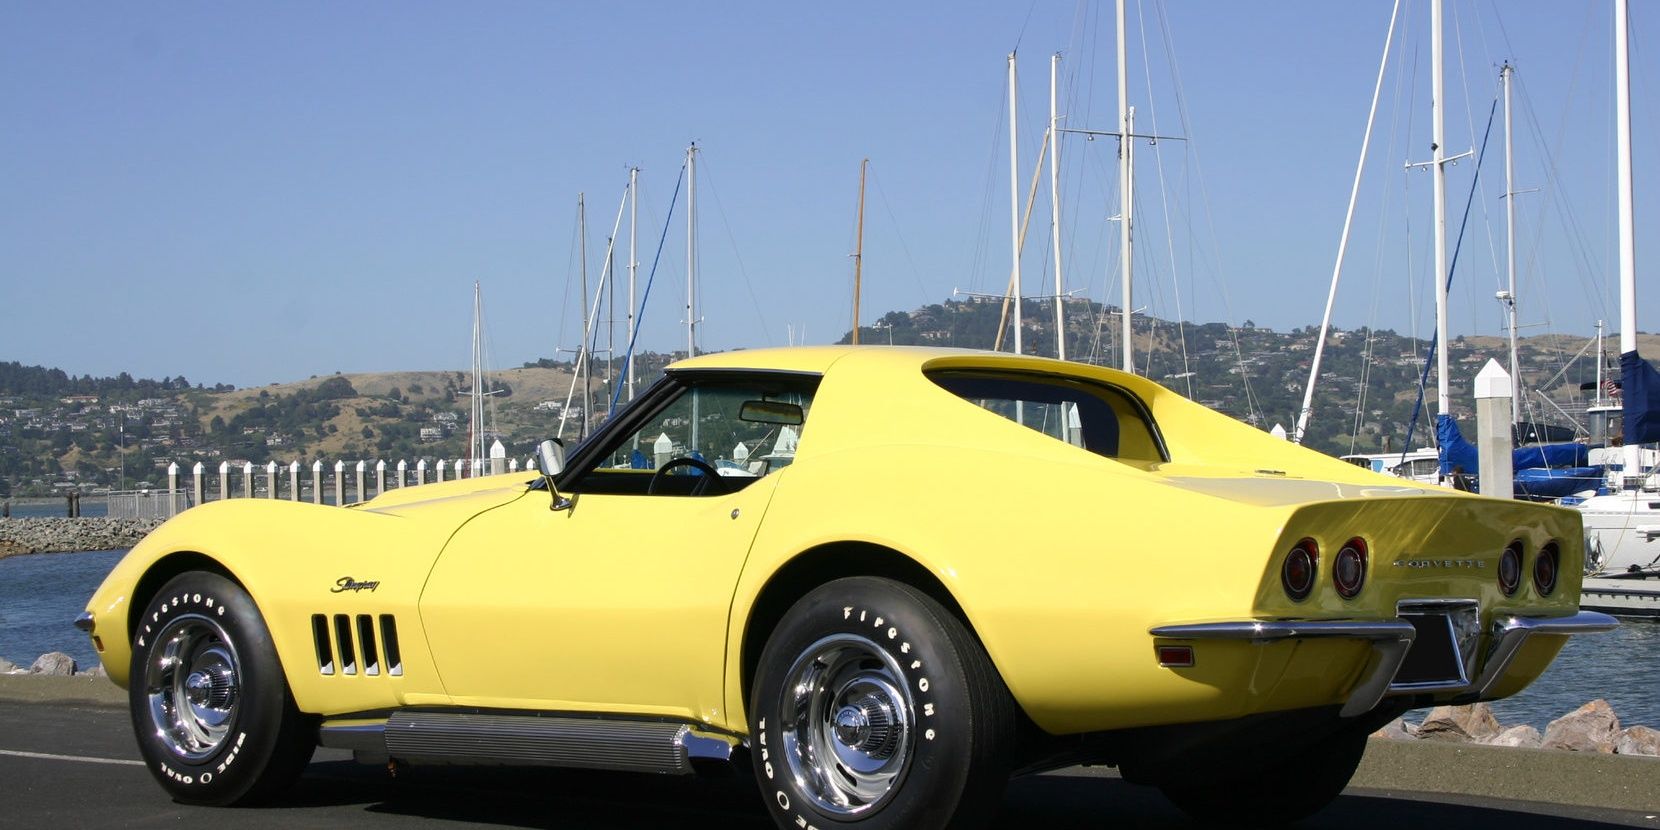 1969 Chevrolet Corvette ZL1 (Yellow) - Rear